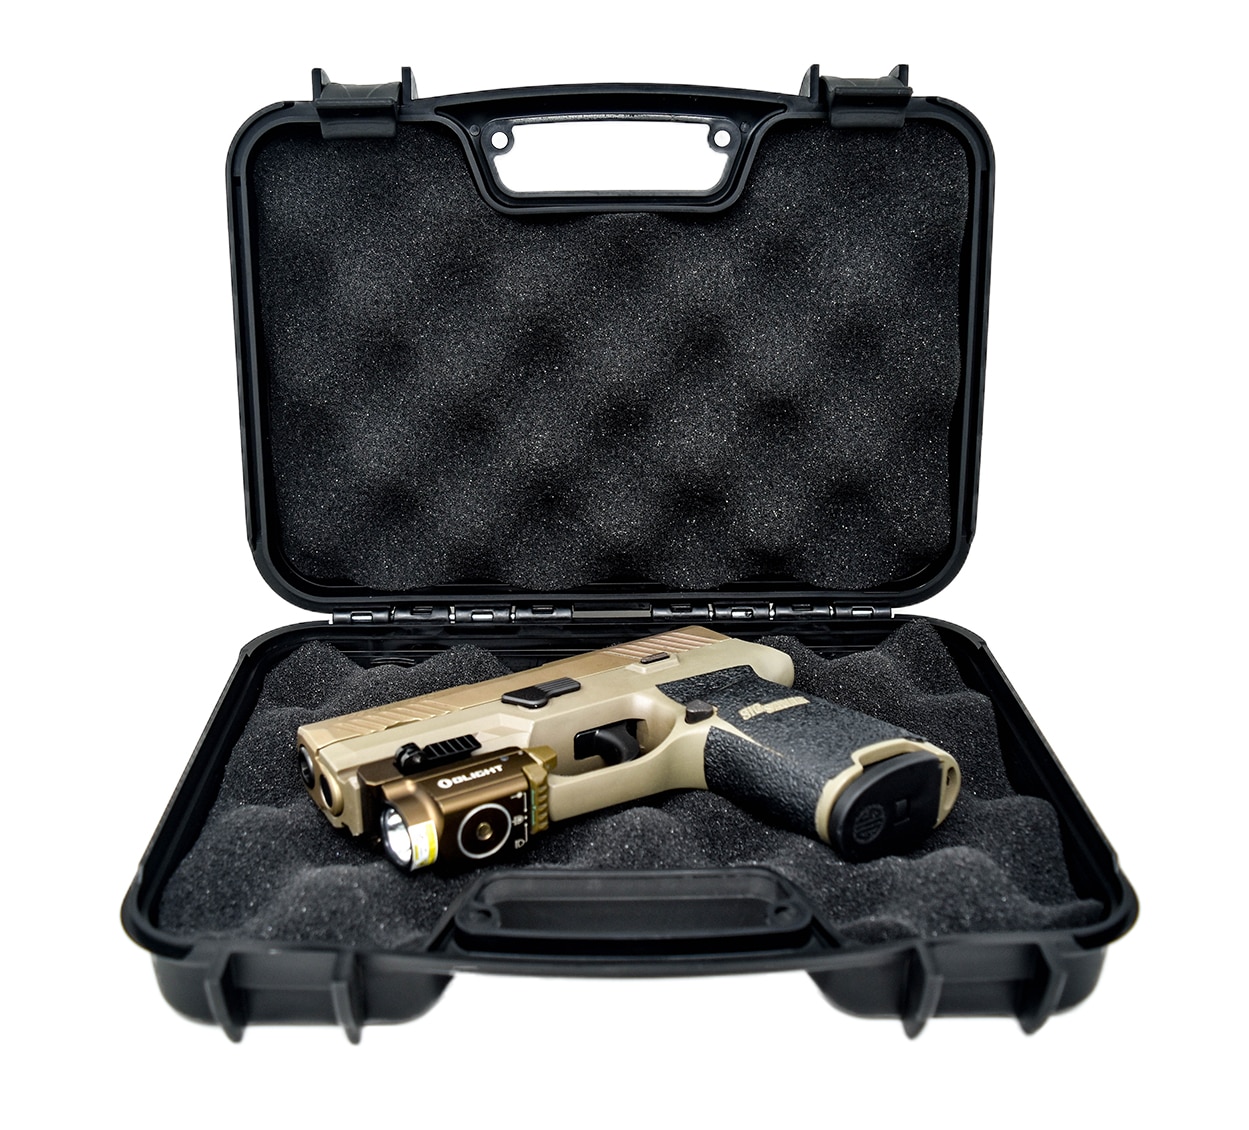 Kiro Premium Gun Owners bundle - Handgun Case, Cleaning Kit, Eye Protection & Gun Belt 18